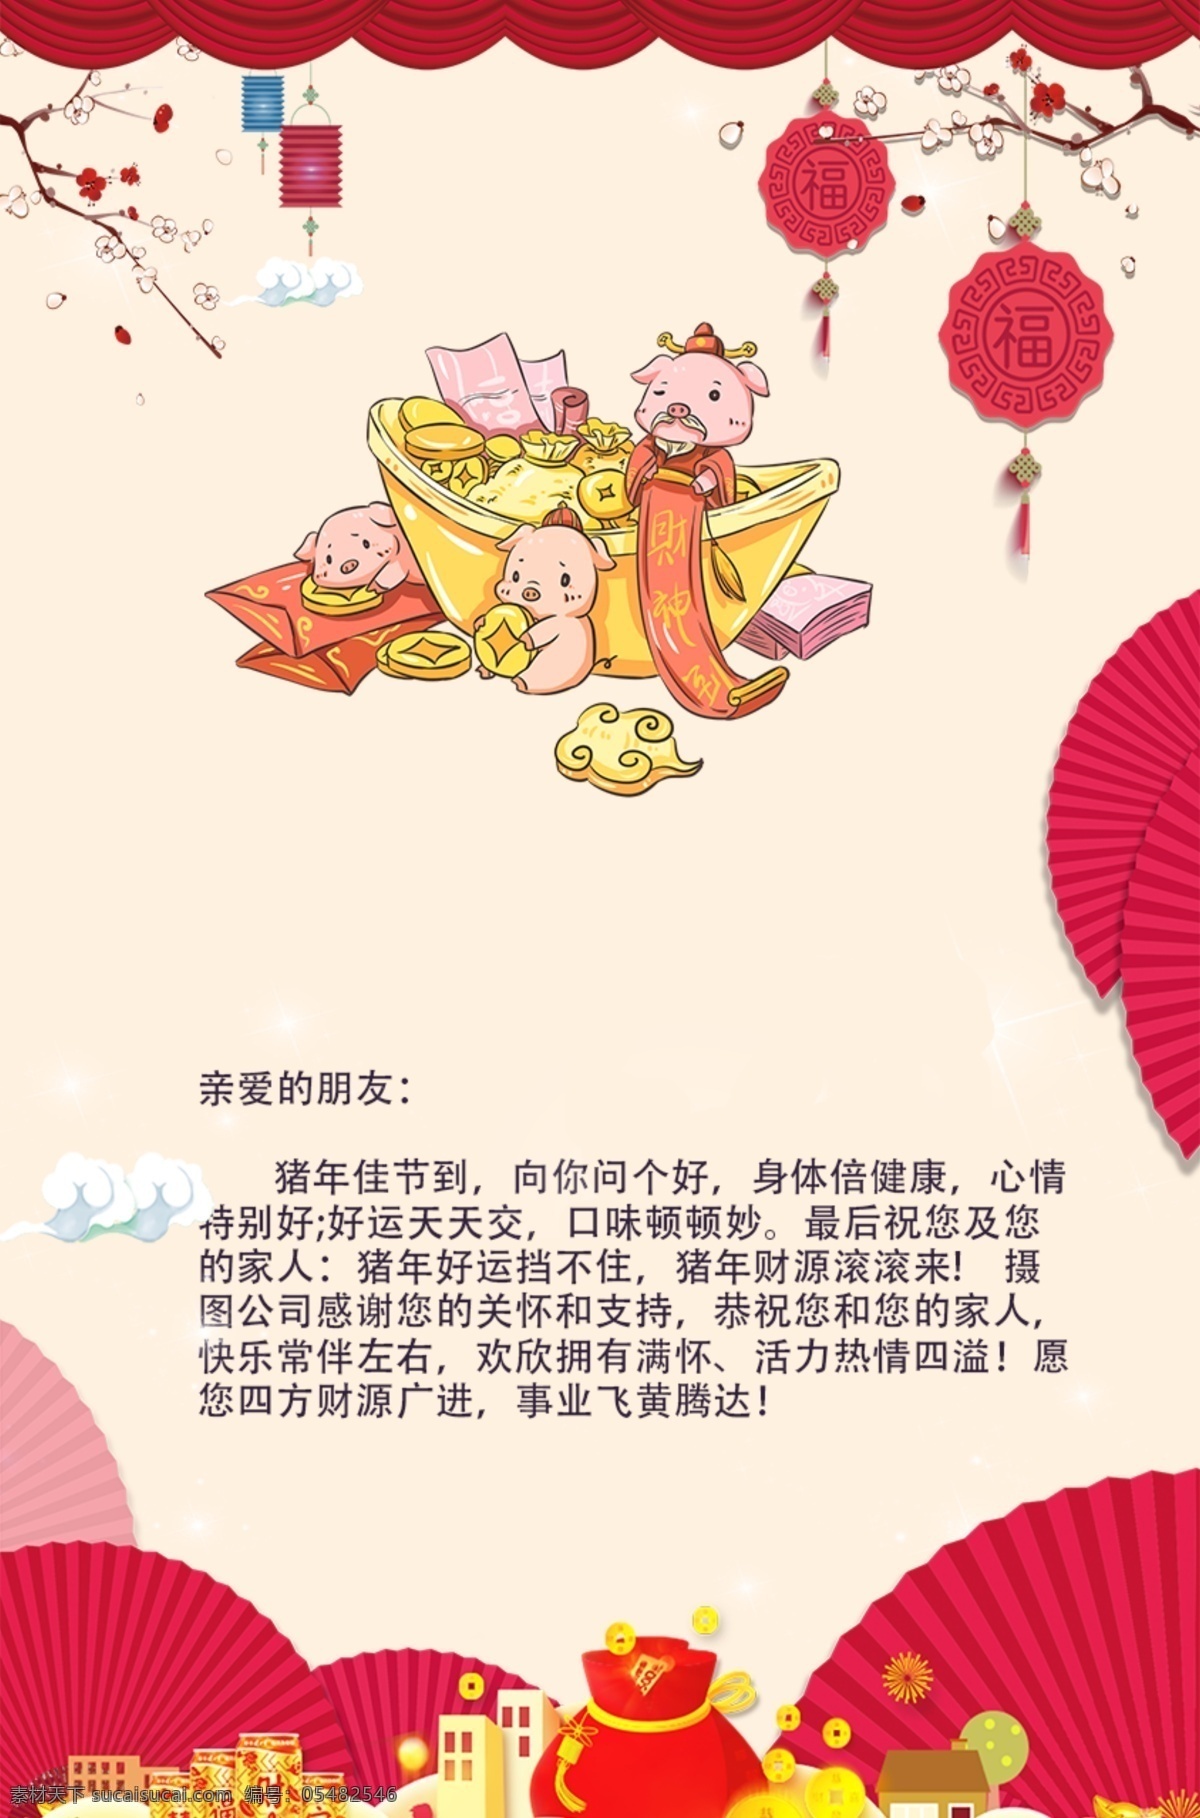 猪年新年贺卡 猪年 新年 新春贺卡 贺卡 贺卡设计 设计模板 2019 新春 春节